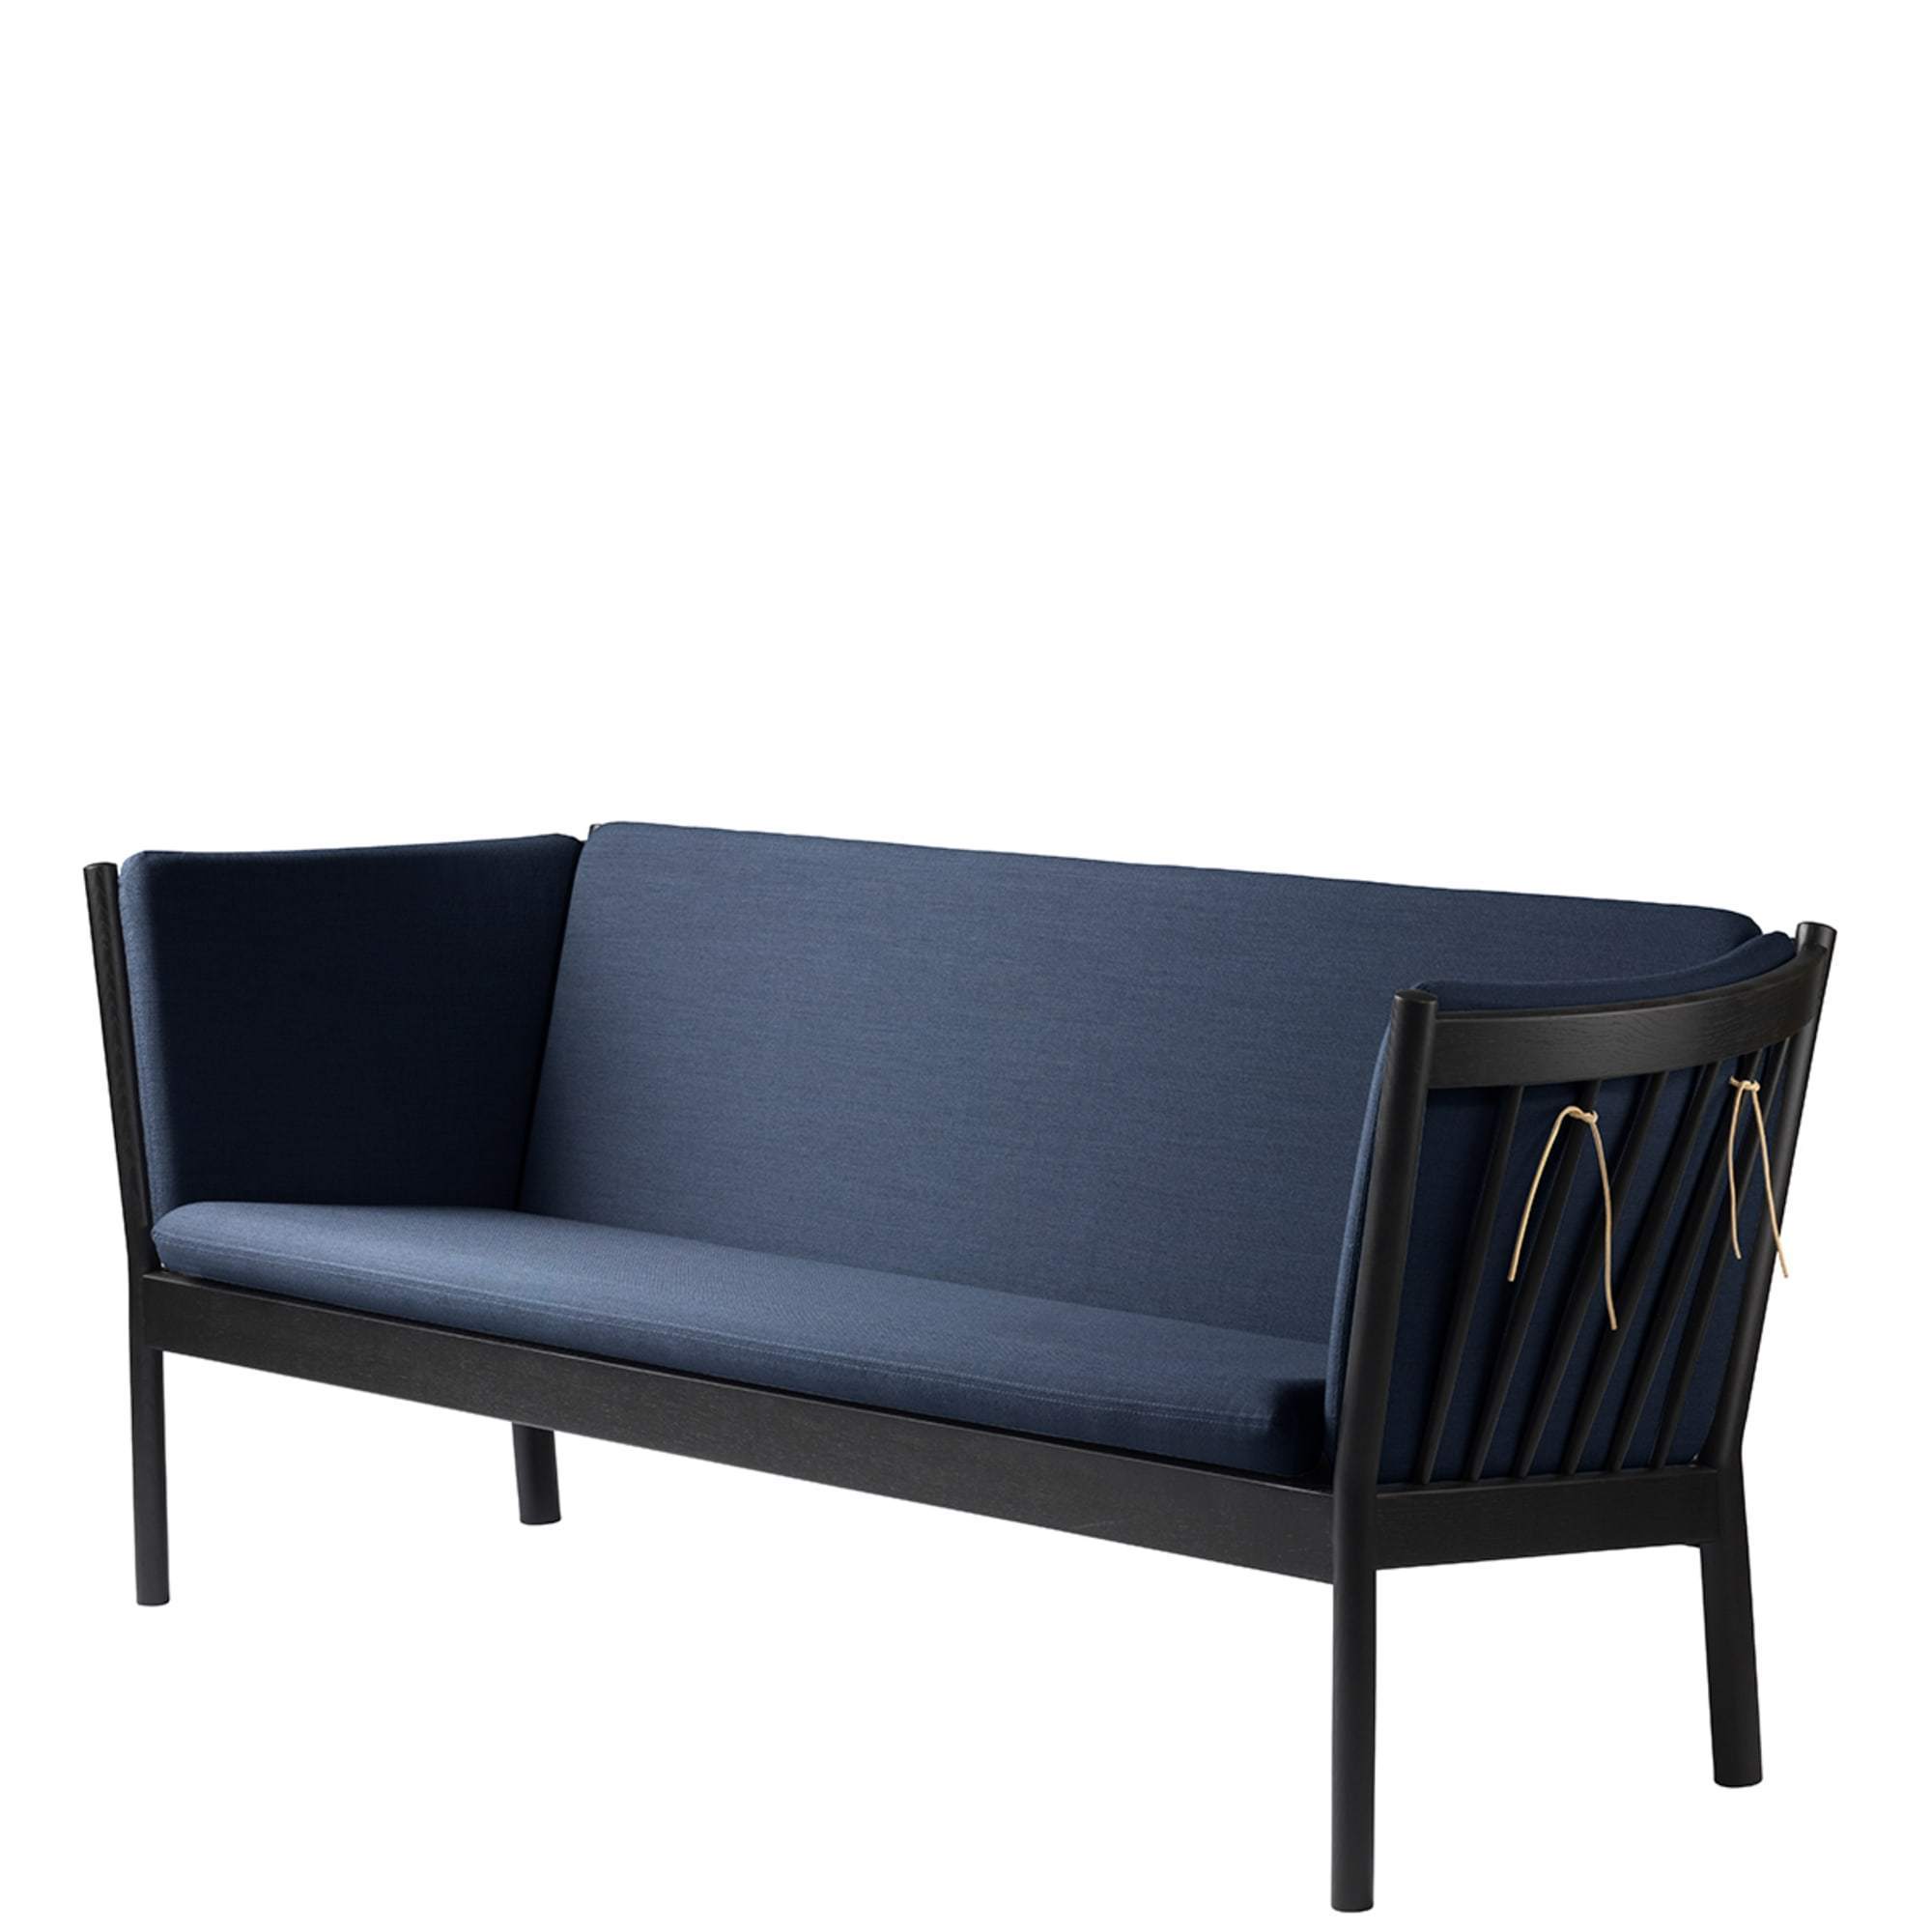 Fdb Møbler J149 3 Personne Sofa, chêne noir, tissu bleu foncé